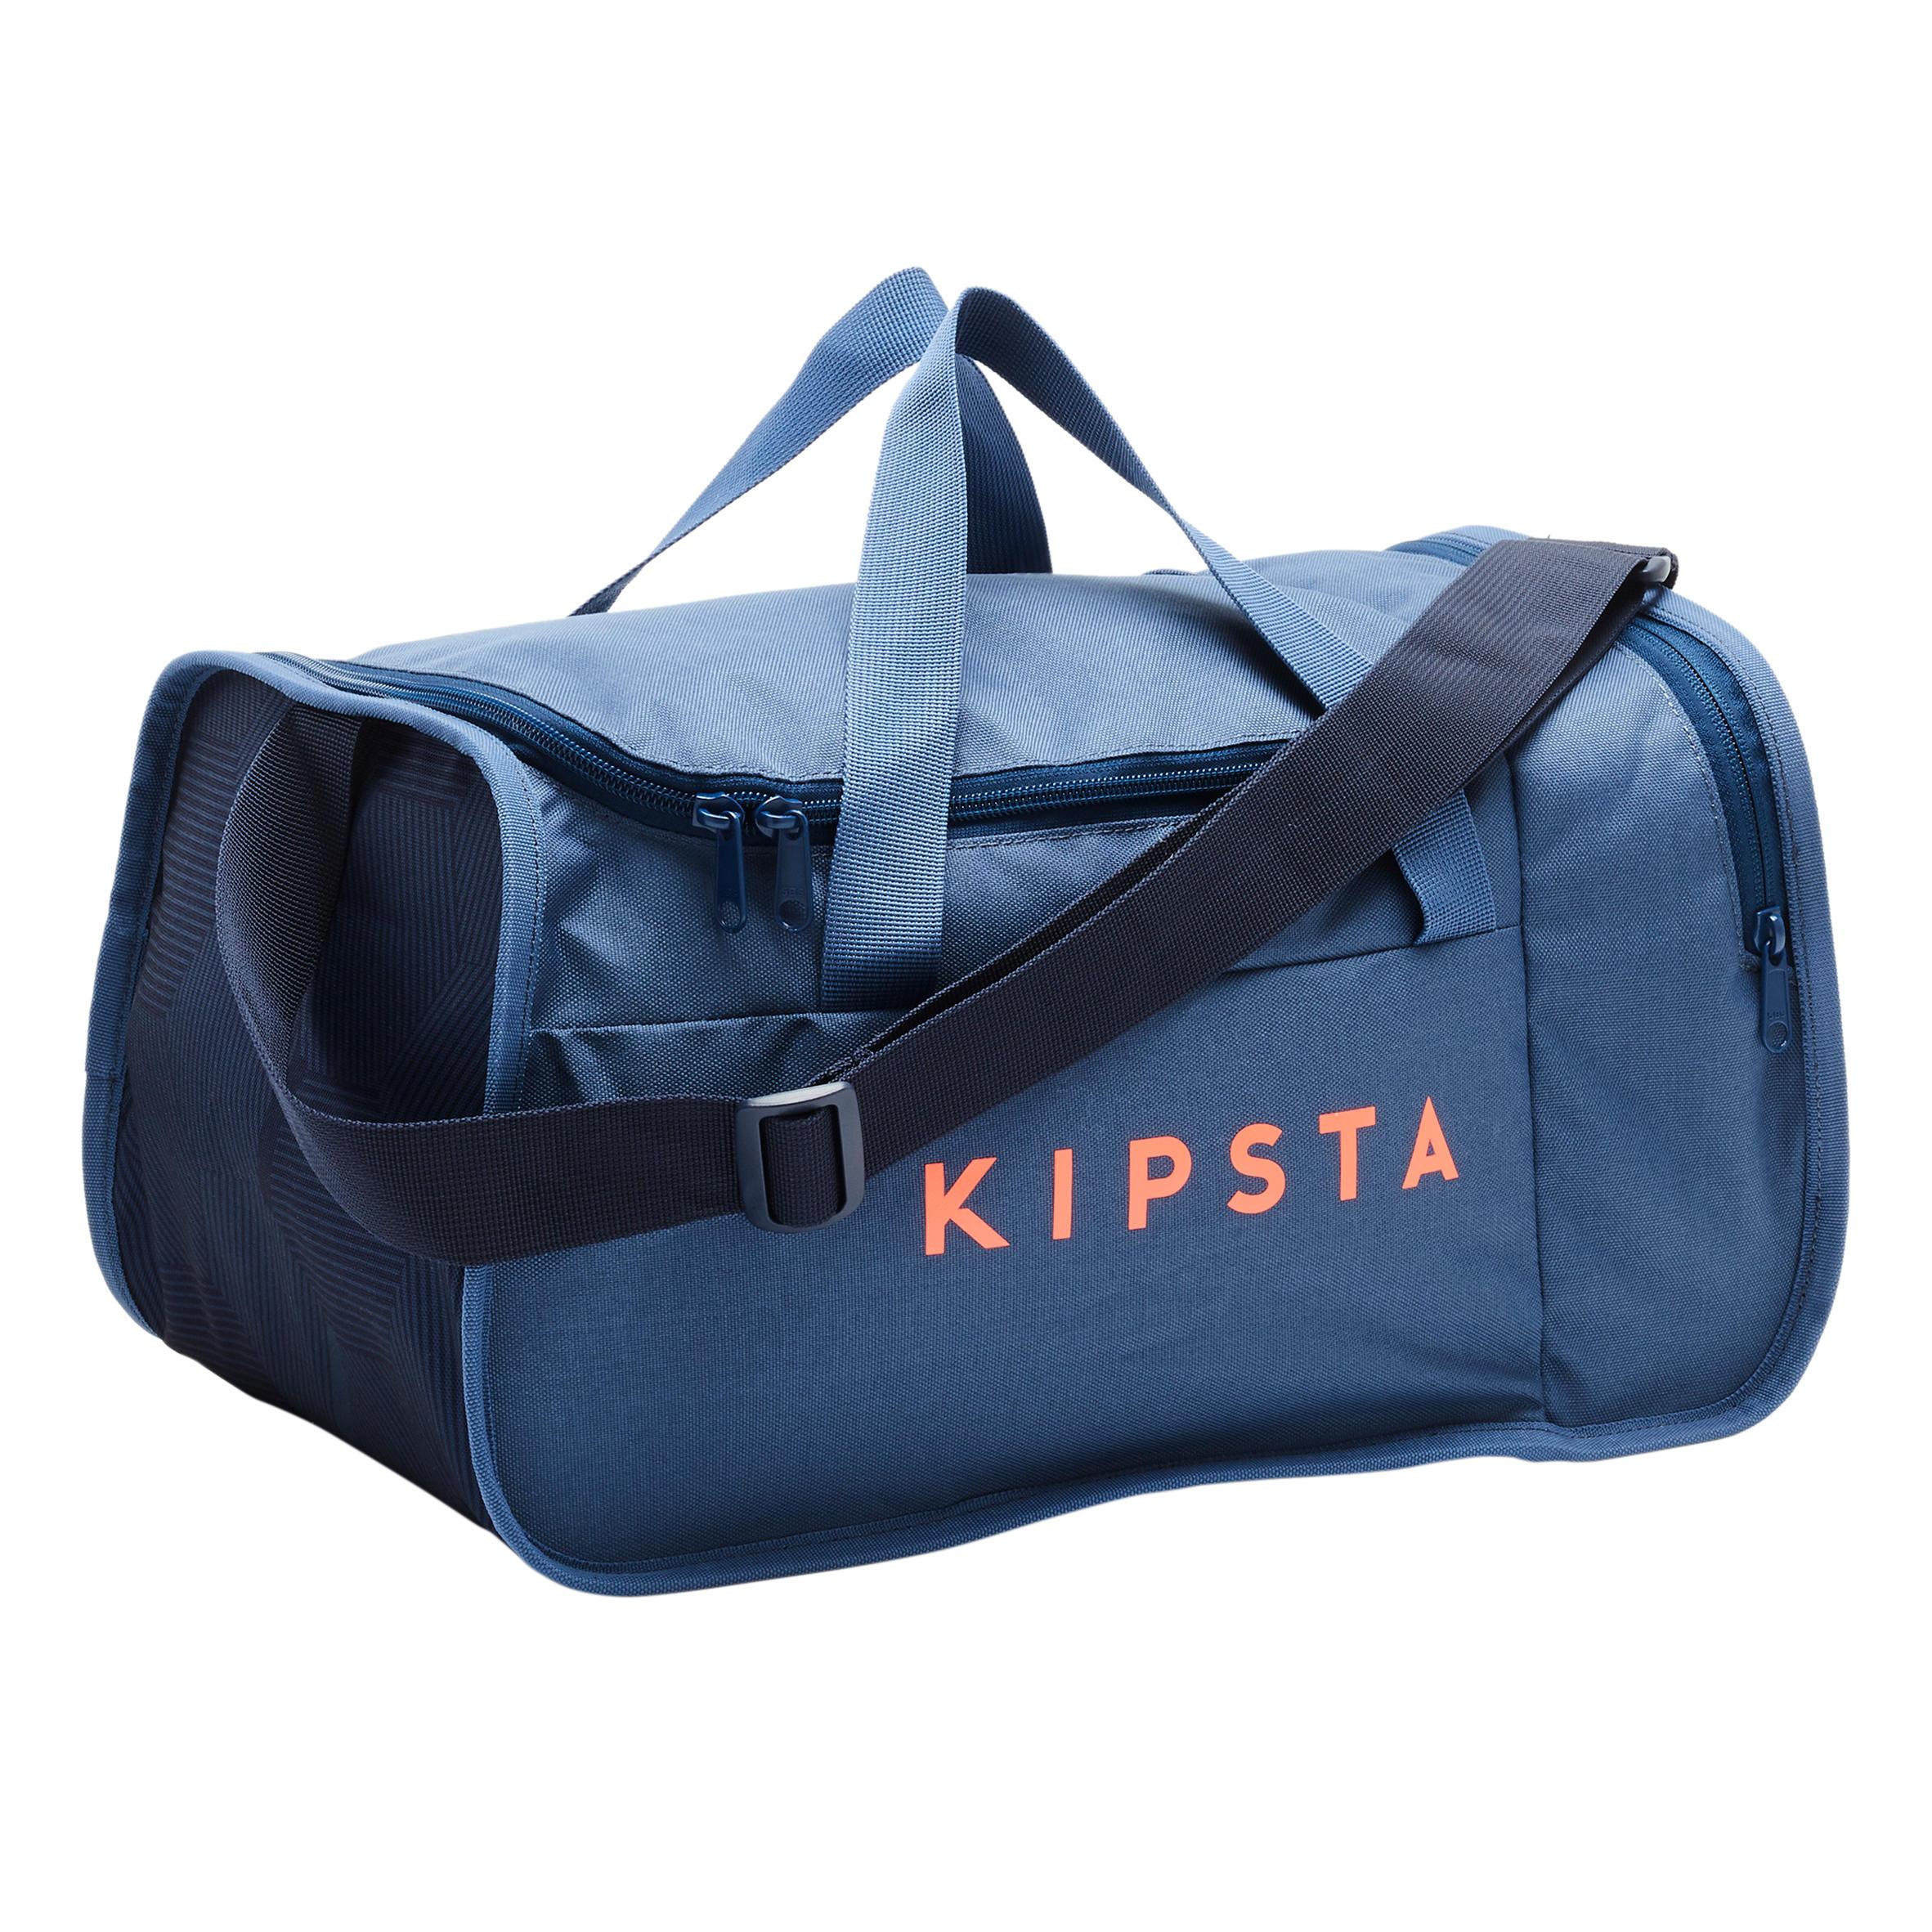 [ด่วน!! โปรโมชั่นมีจำนวนจำกัด] กระเป๋าอุปกรณ์กีฬาขนาด 20 ลิตรรุ่น KIPOCKET (สีน้ำเงิน/ส้ม) สำหรับ ฟุตบอล